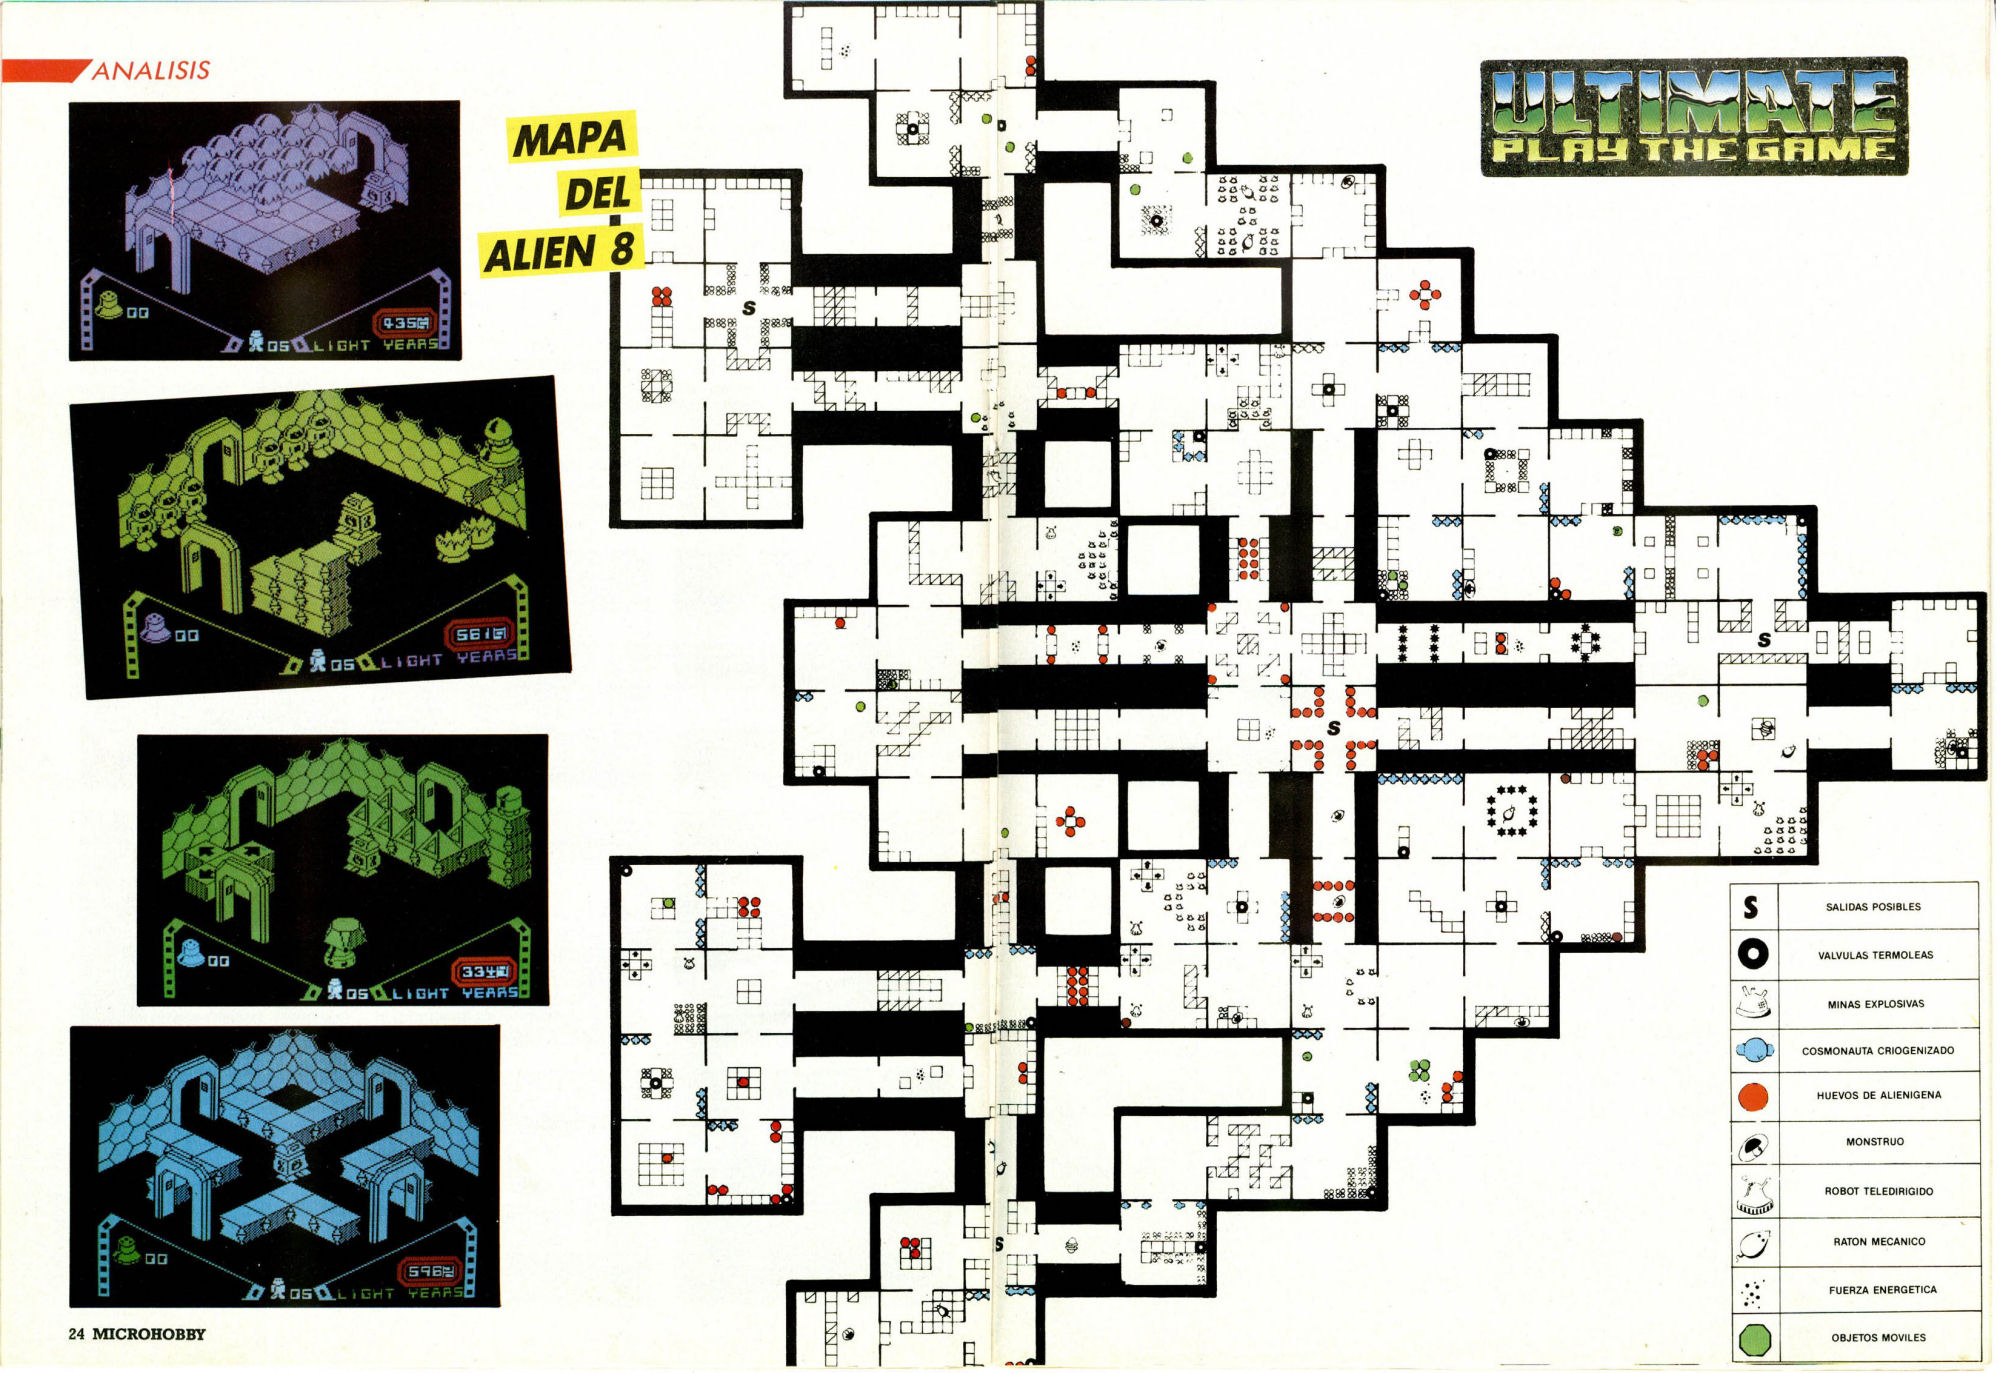 Alien quest eve карта с секретами